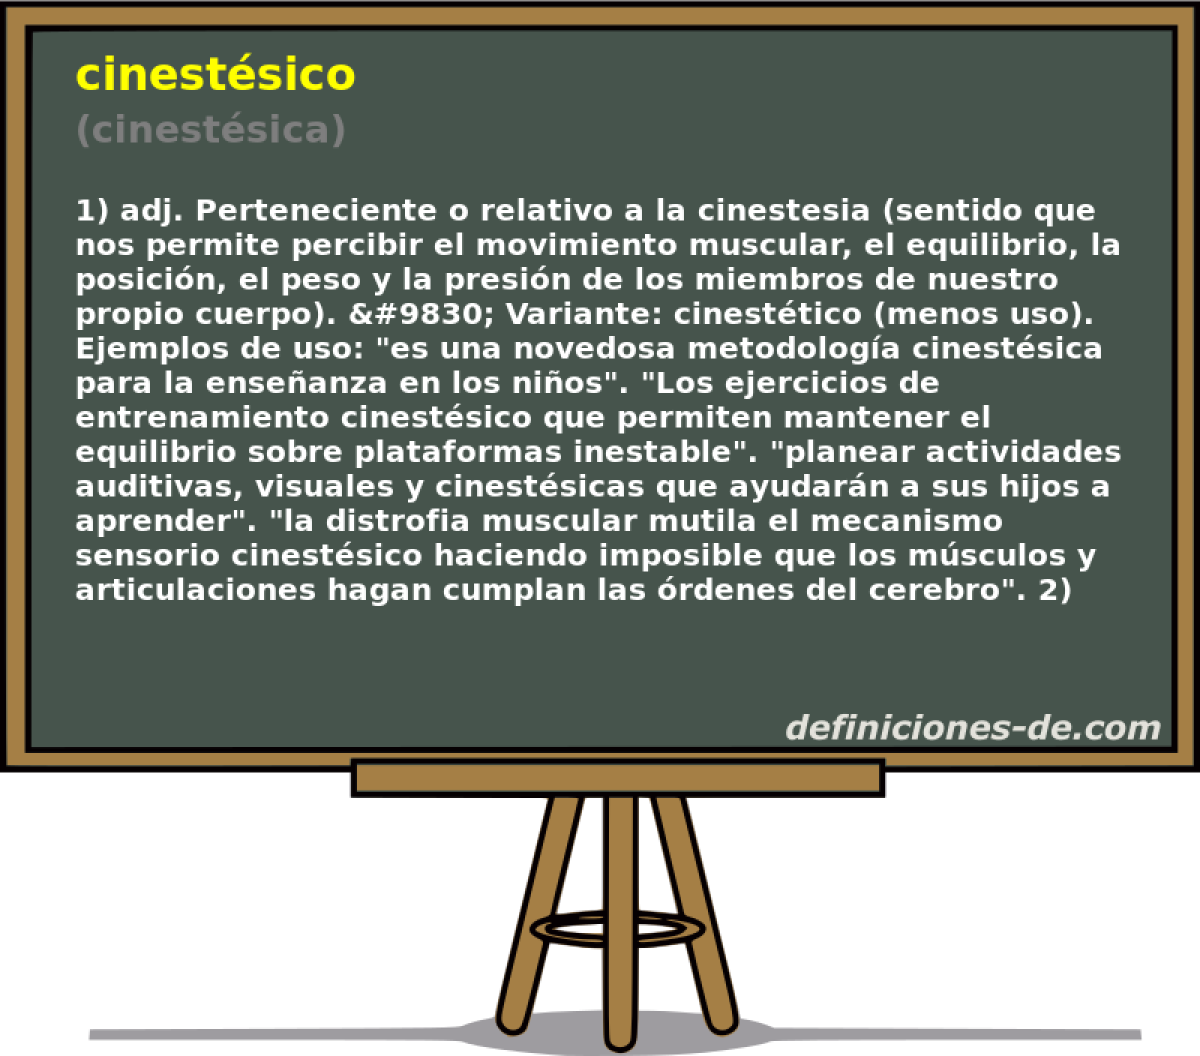 cinestsico (cinestsica)